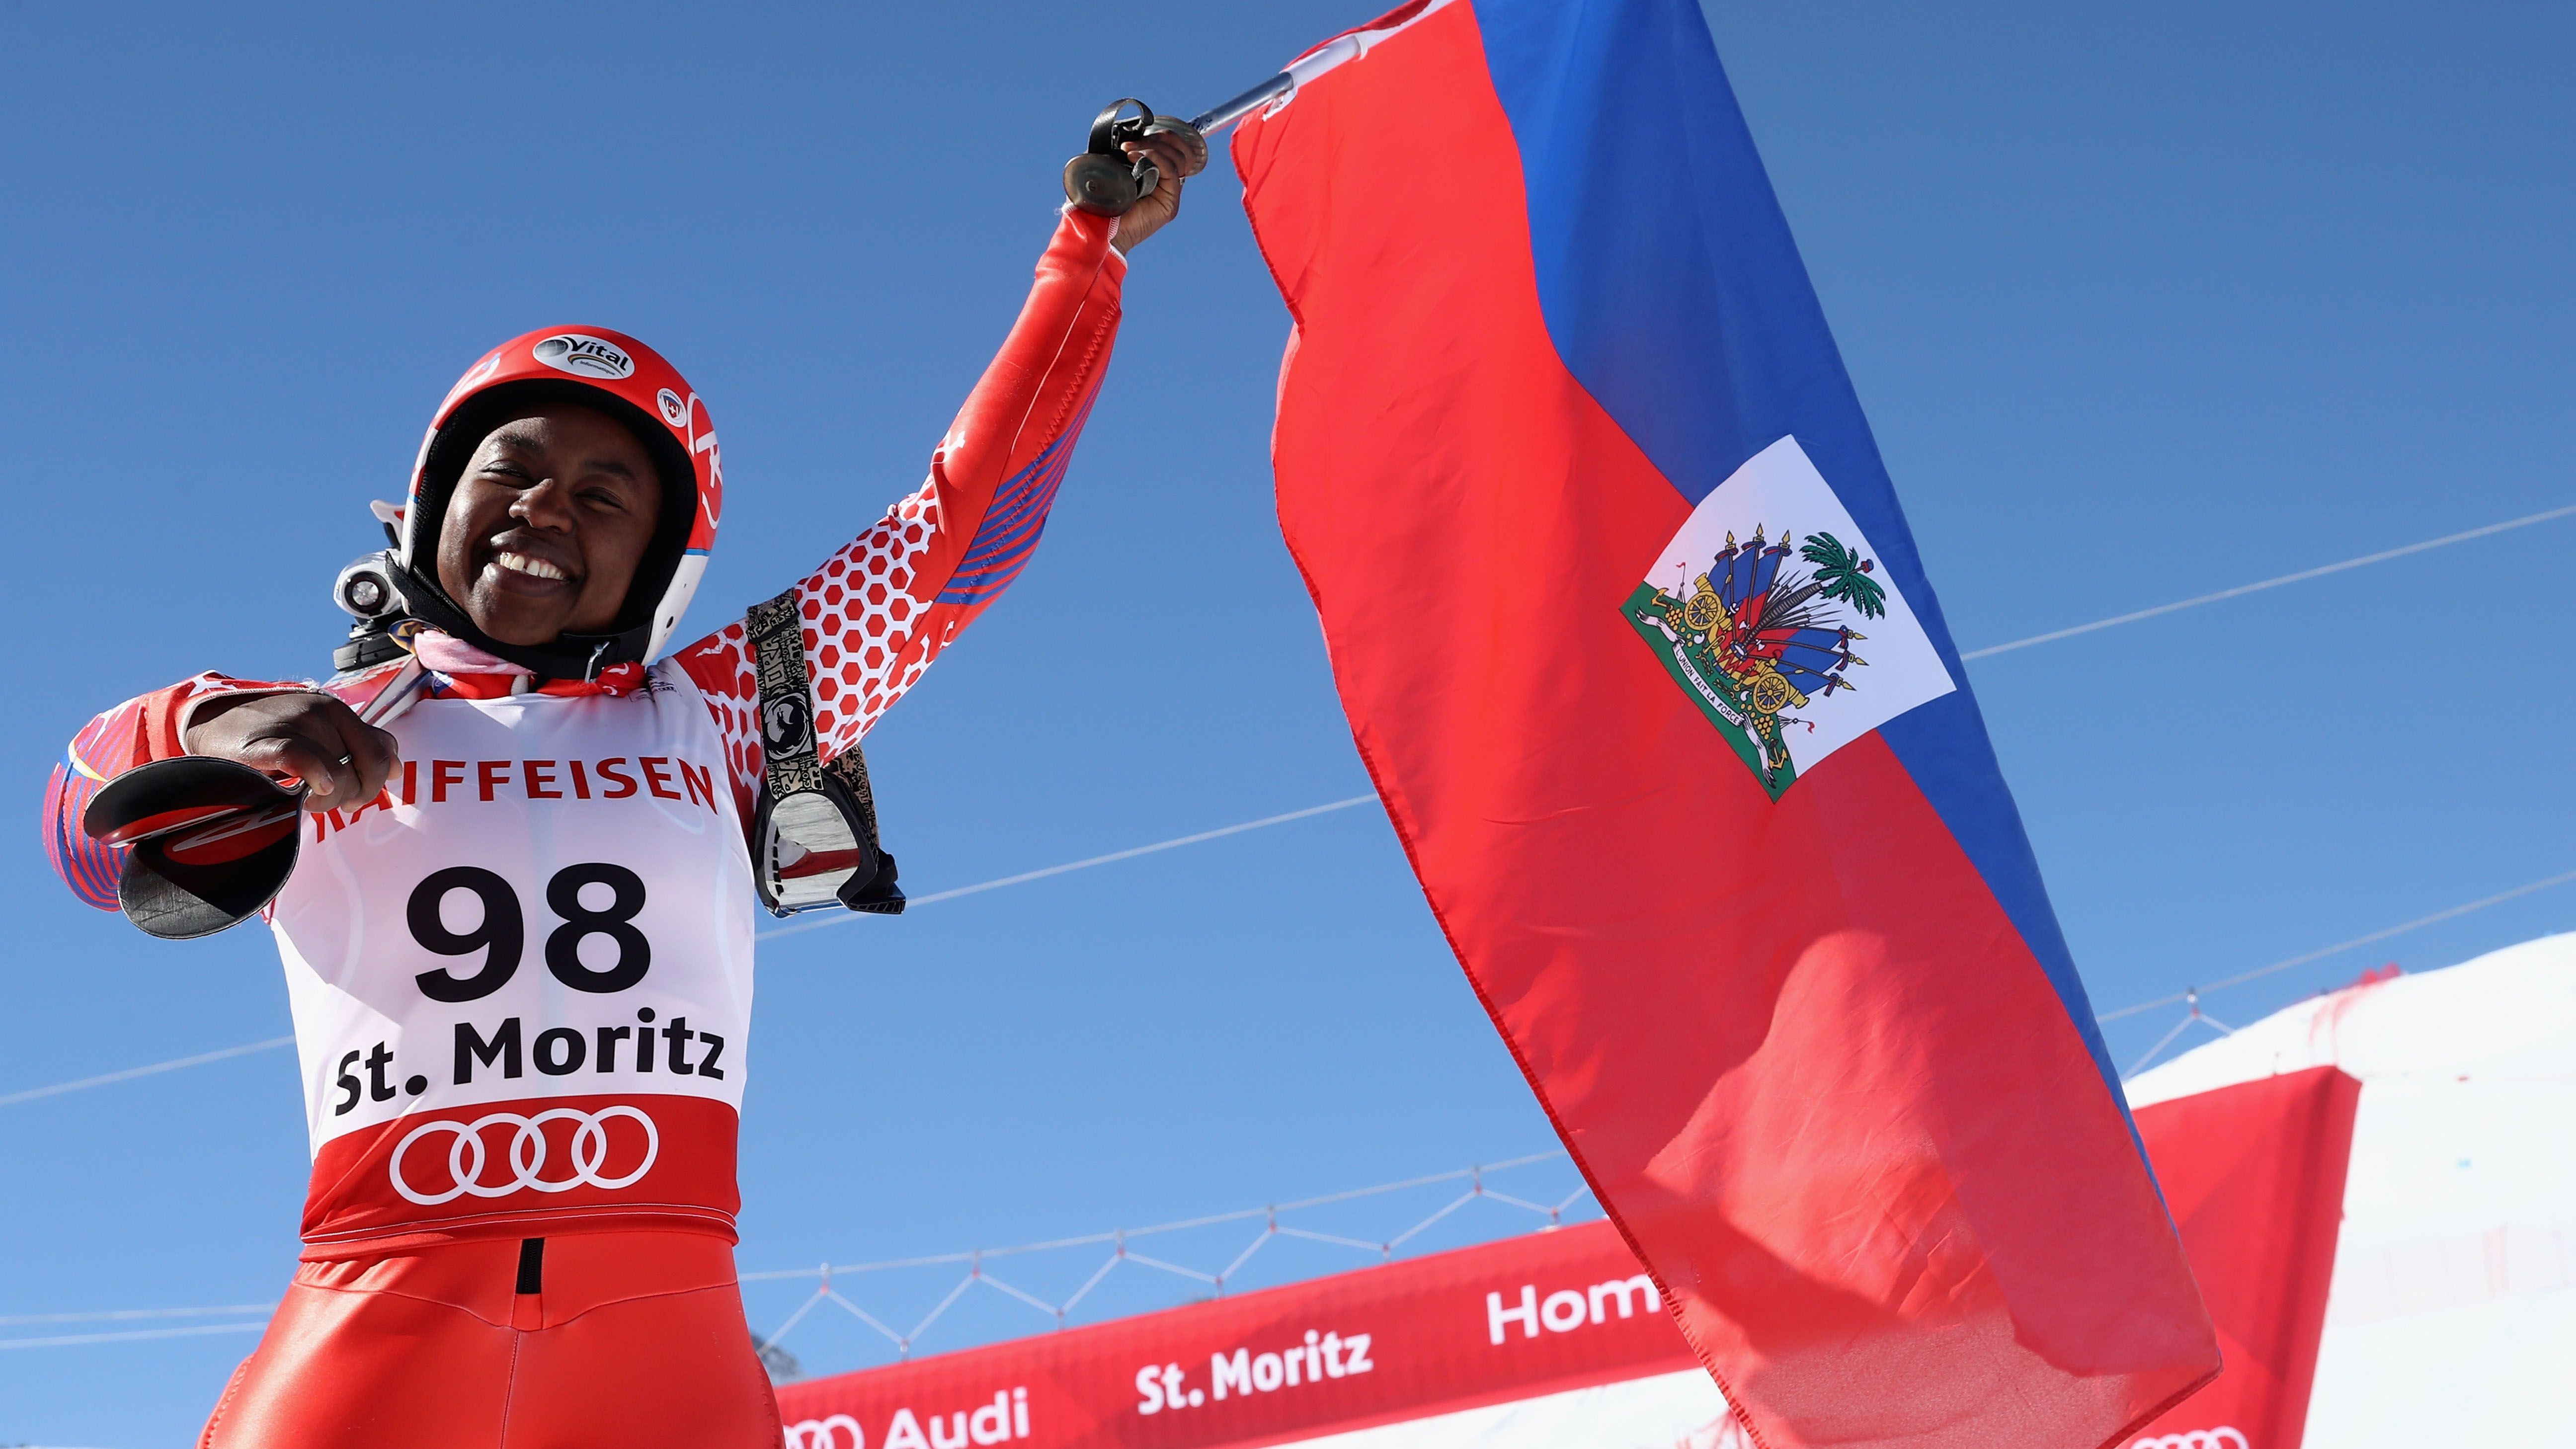 
                <strong>Celine Marti wird zum heimlichen Star der Ski-WM</strong><br>
                Auf dem Podium standen nach dem Riesenslalom der Damen die großen Fahrerinnen der Ski-Alpin-Szene. Bei der WM in Cortina d'Ampezzo gewann die Schweizerin Lara Gut-Behrami ihre zweite Goldmedaille. Superstar Mikaela Shiffrin wurde Zweite, Katharina Liensberger holte Bronze. Doch die wirklichen Geschichten spielen sich bei einer WM meist im Hintergrund ab. Eine ganz Besondere schrieb in diesem Jahr die Schweiz-Haitianerin Celine Marti.
              